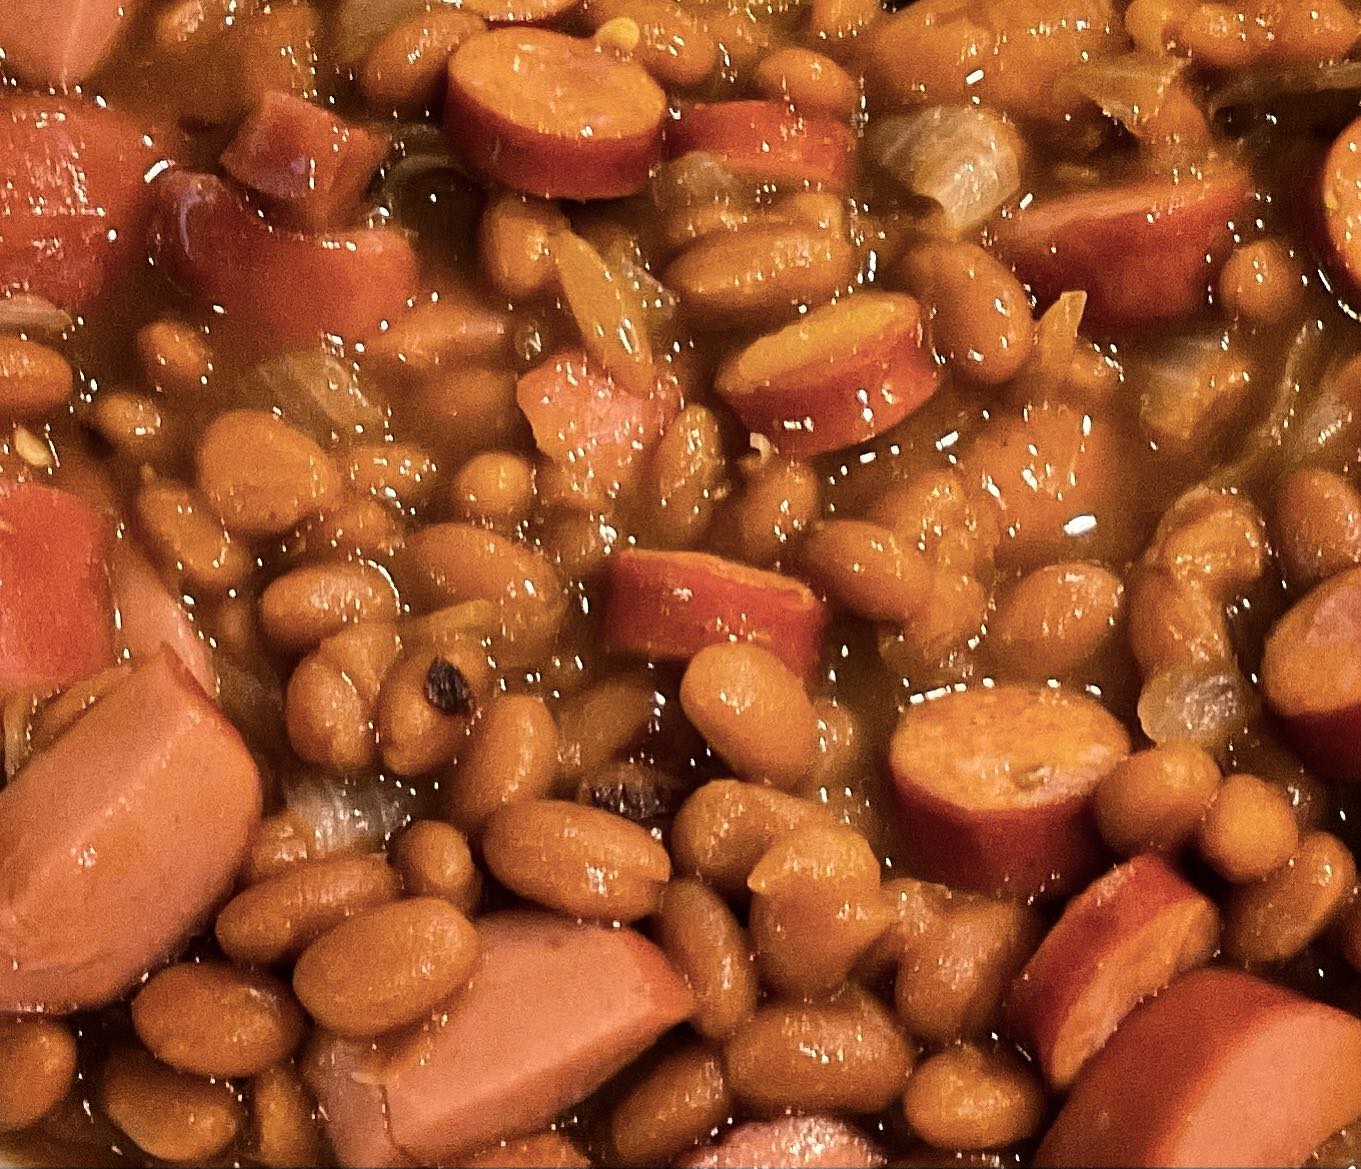 Wieners and Beans

#foodporn #lunchtime #fluxus #fluxusfoto #wienersandbeans